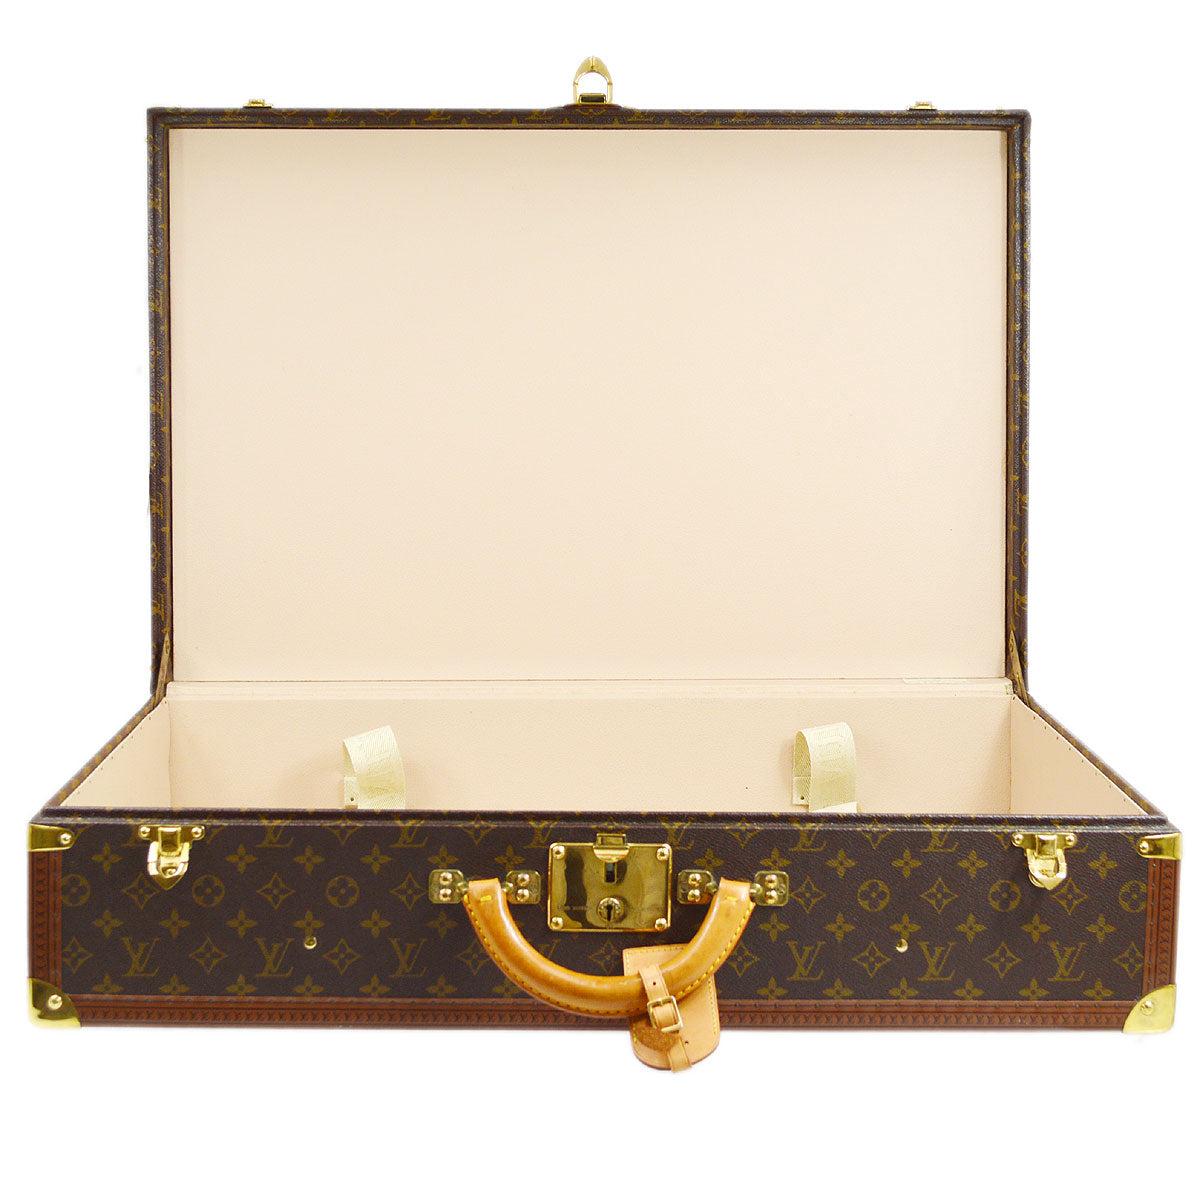 LOUIS VUITTON Monogram Canvas Gold Large Travel Suitcase Trunk For Sale 1